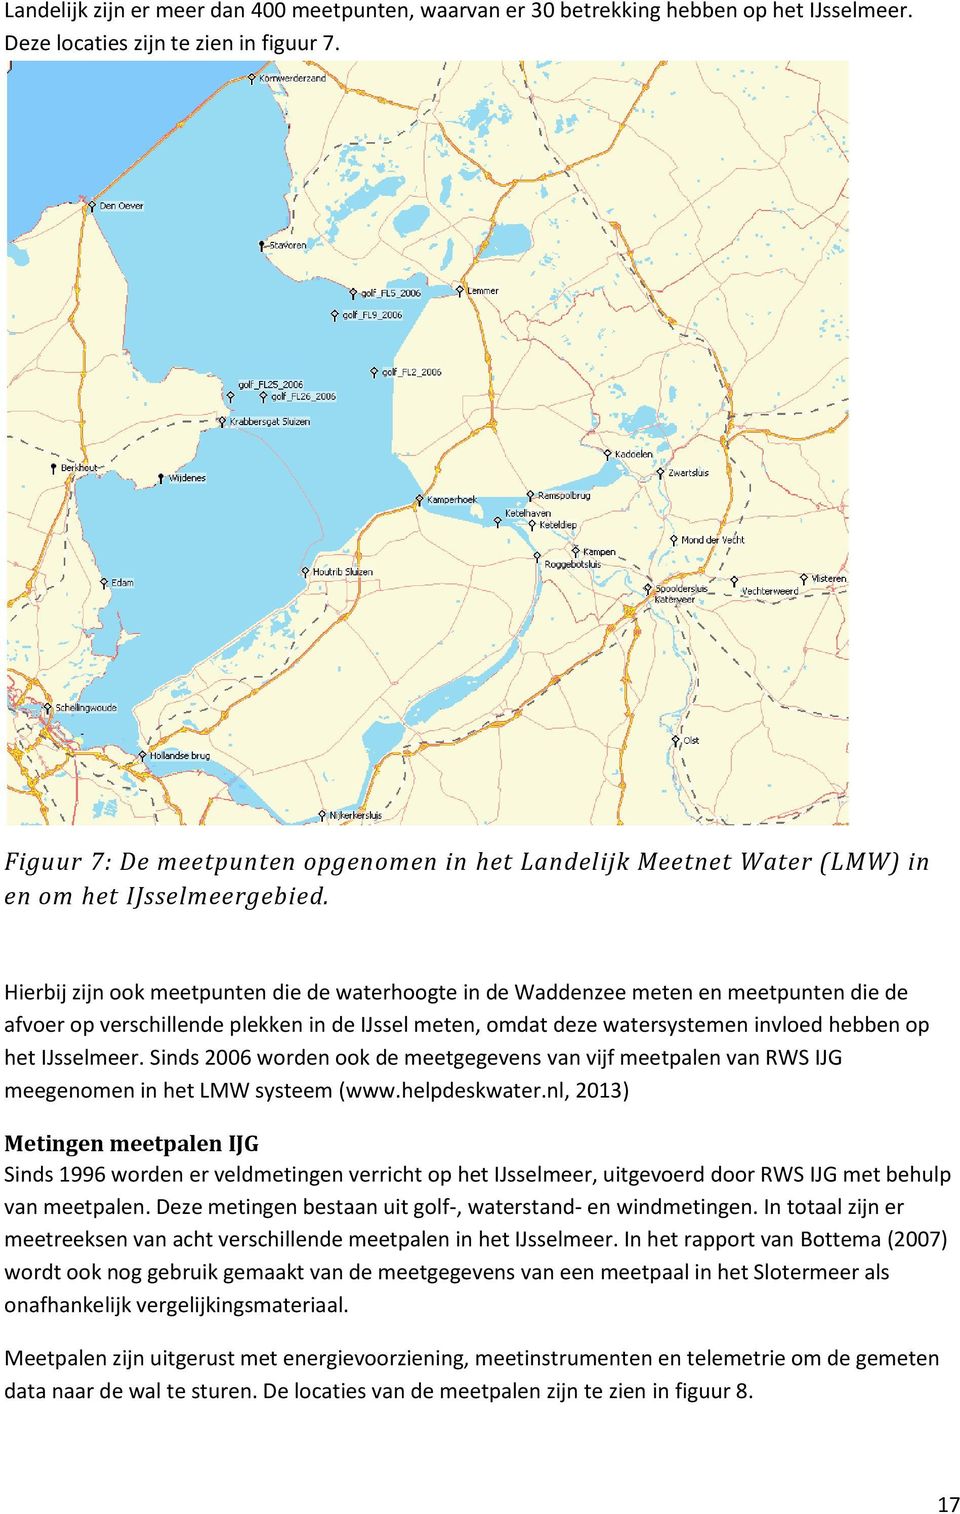 Hierbij zijn ook meetpunten die de waterhoogte in de Waddenzee meten en meetpunten die de afvoer op verschillende plekken in de IJssel meten, omdat deze watersystemen invloed hebben op het IJsselmeer.